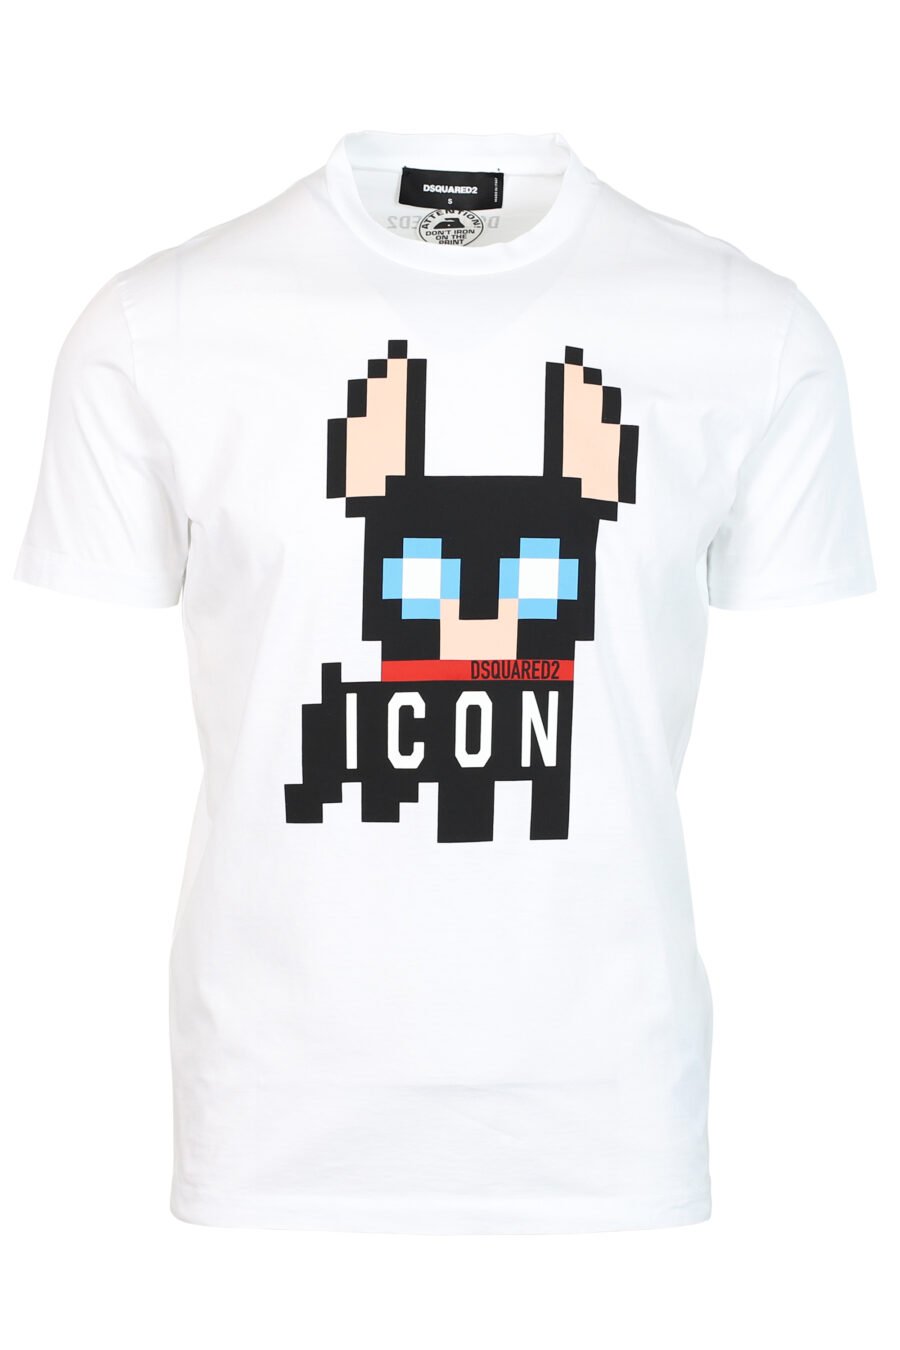 Camiseta blanca con maxilogo perro "Pixeled" - 8052134980705